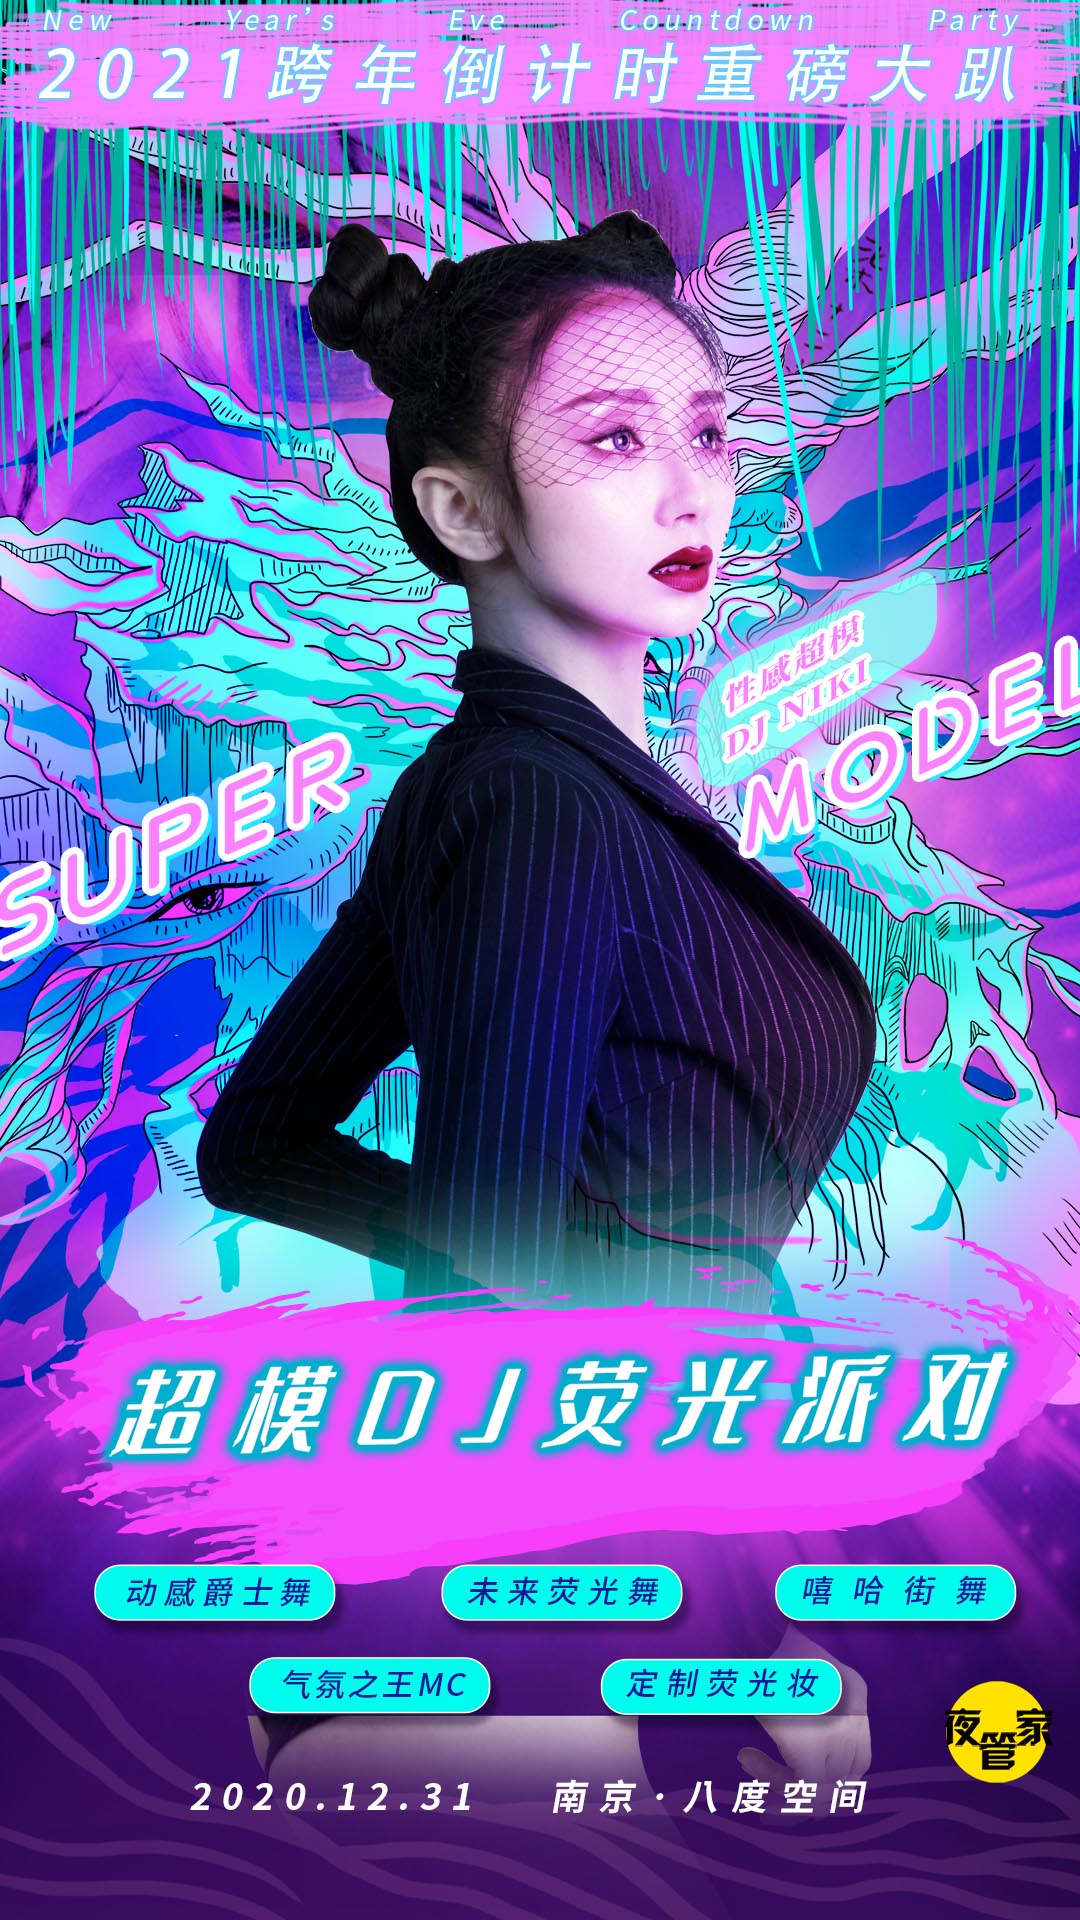 超模DJ巡演荧光派对南京八度空间站